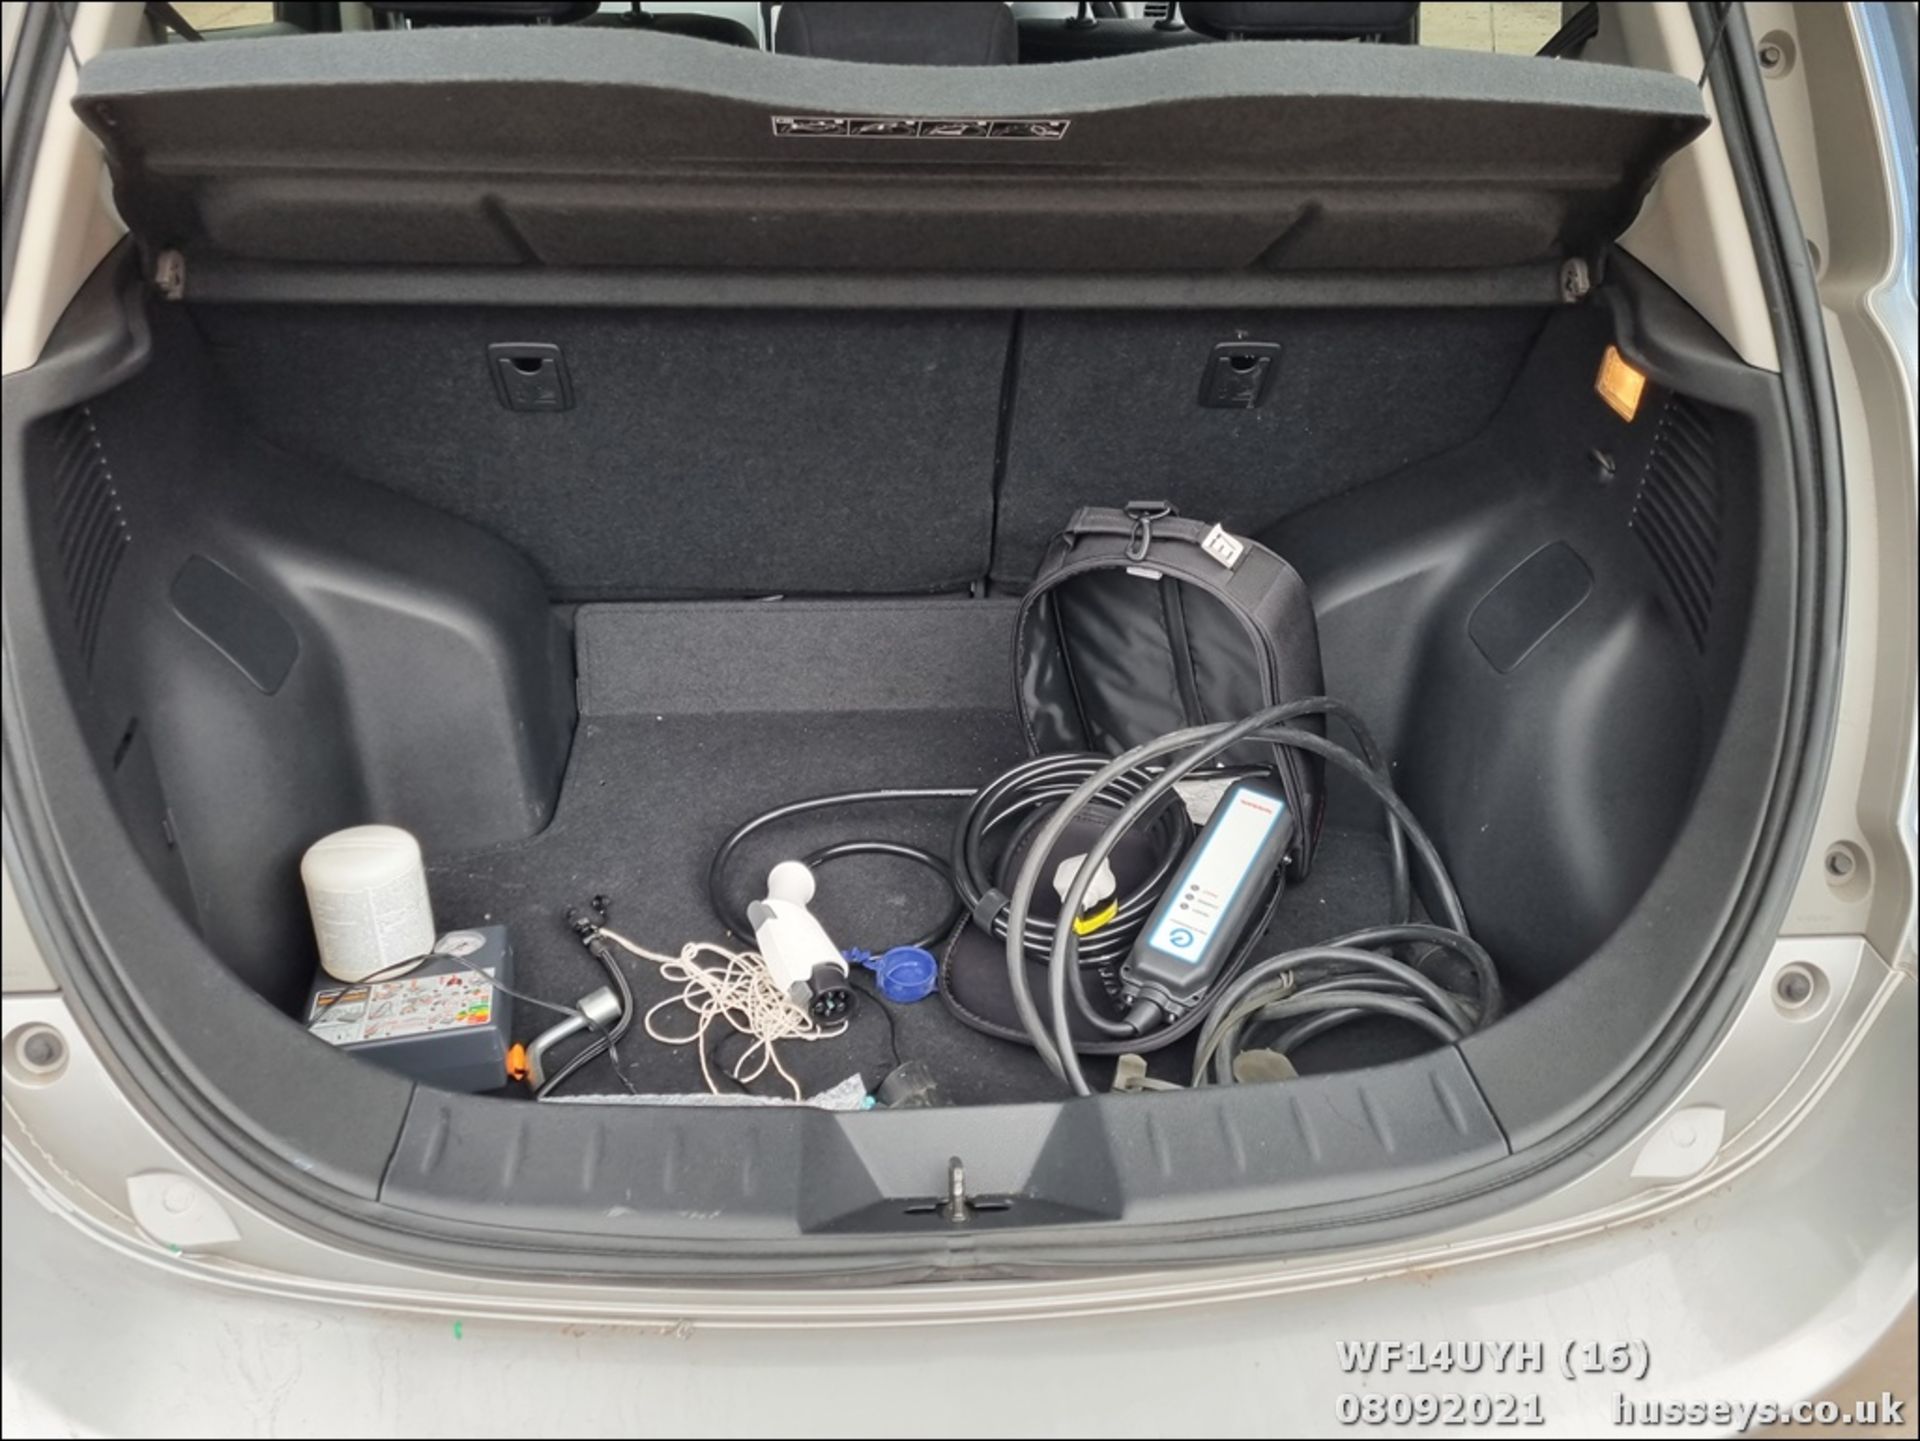 14/14 NISSAN LEAF ACENTA 5dr Hatchback (Silver, 18k) - Image 16 of 23